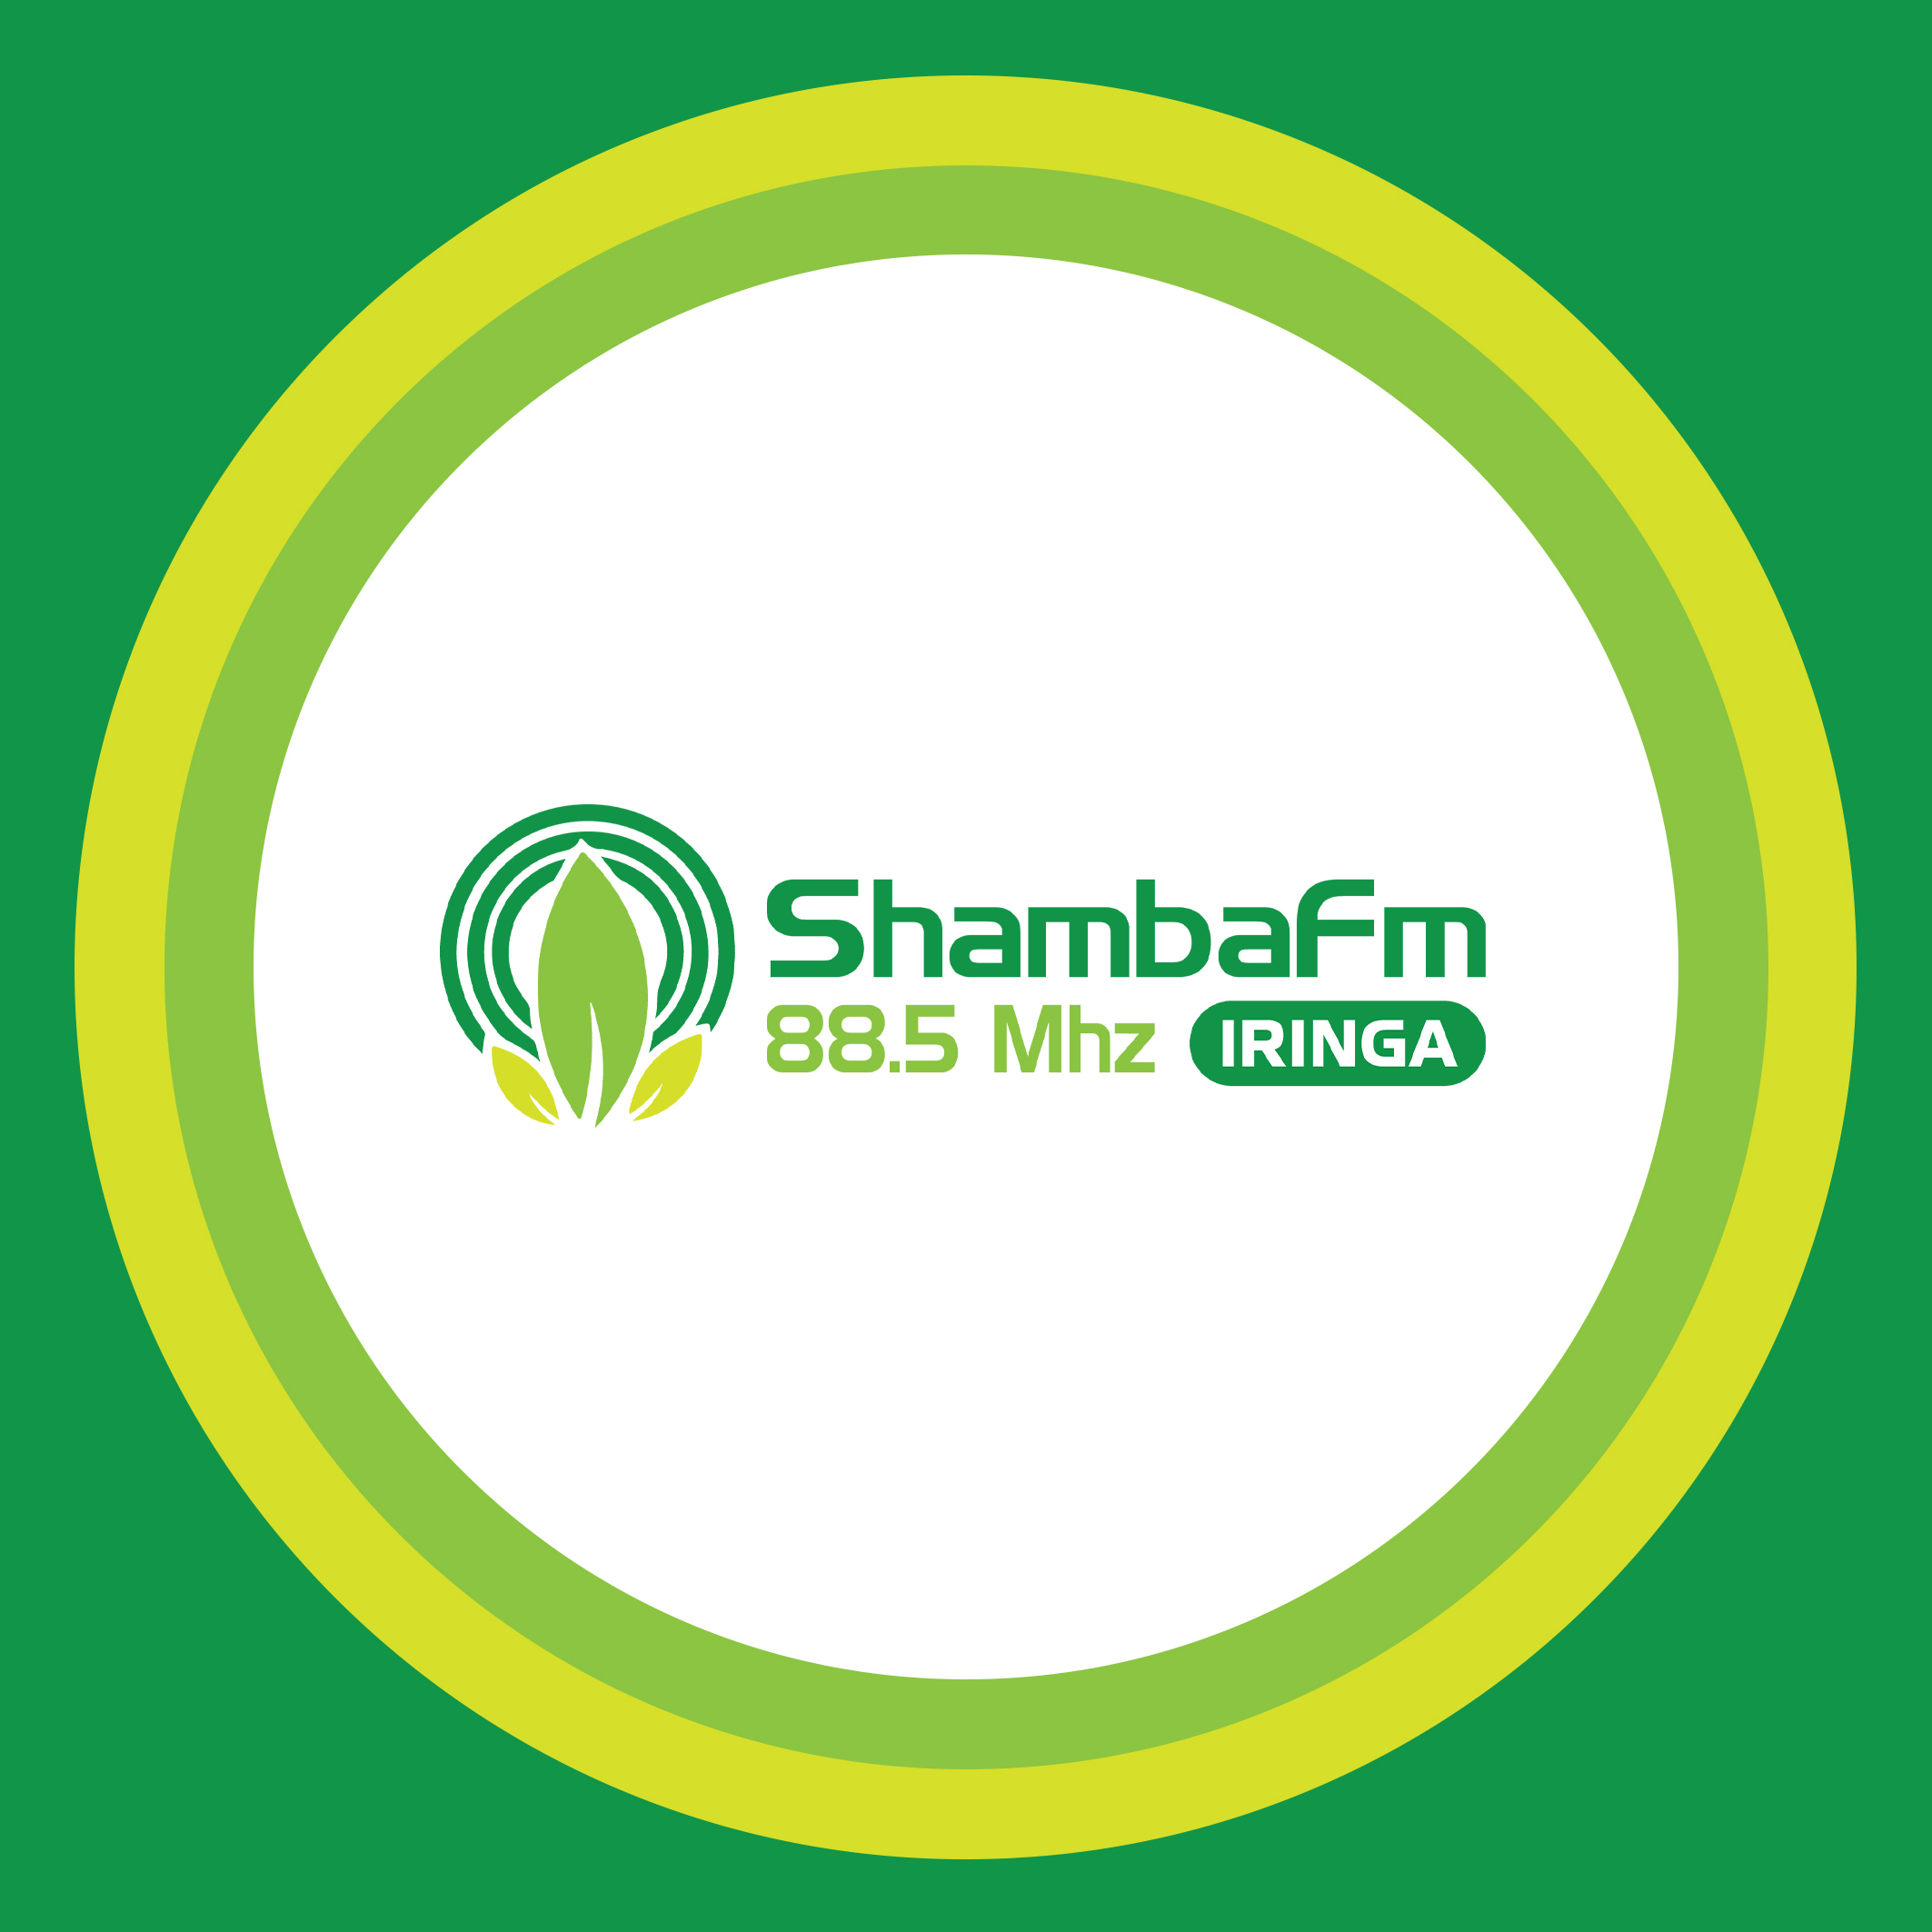 Shamba Fm Radio 88.5 Mhz